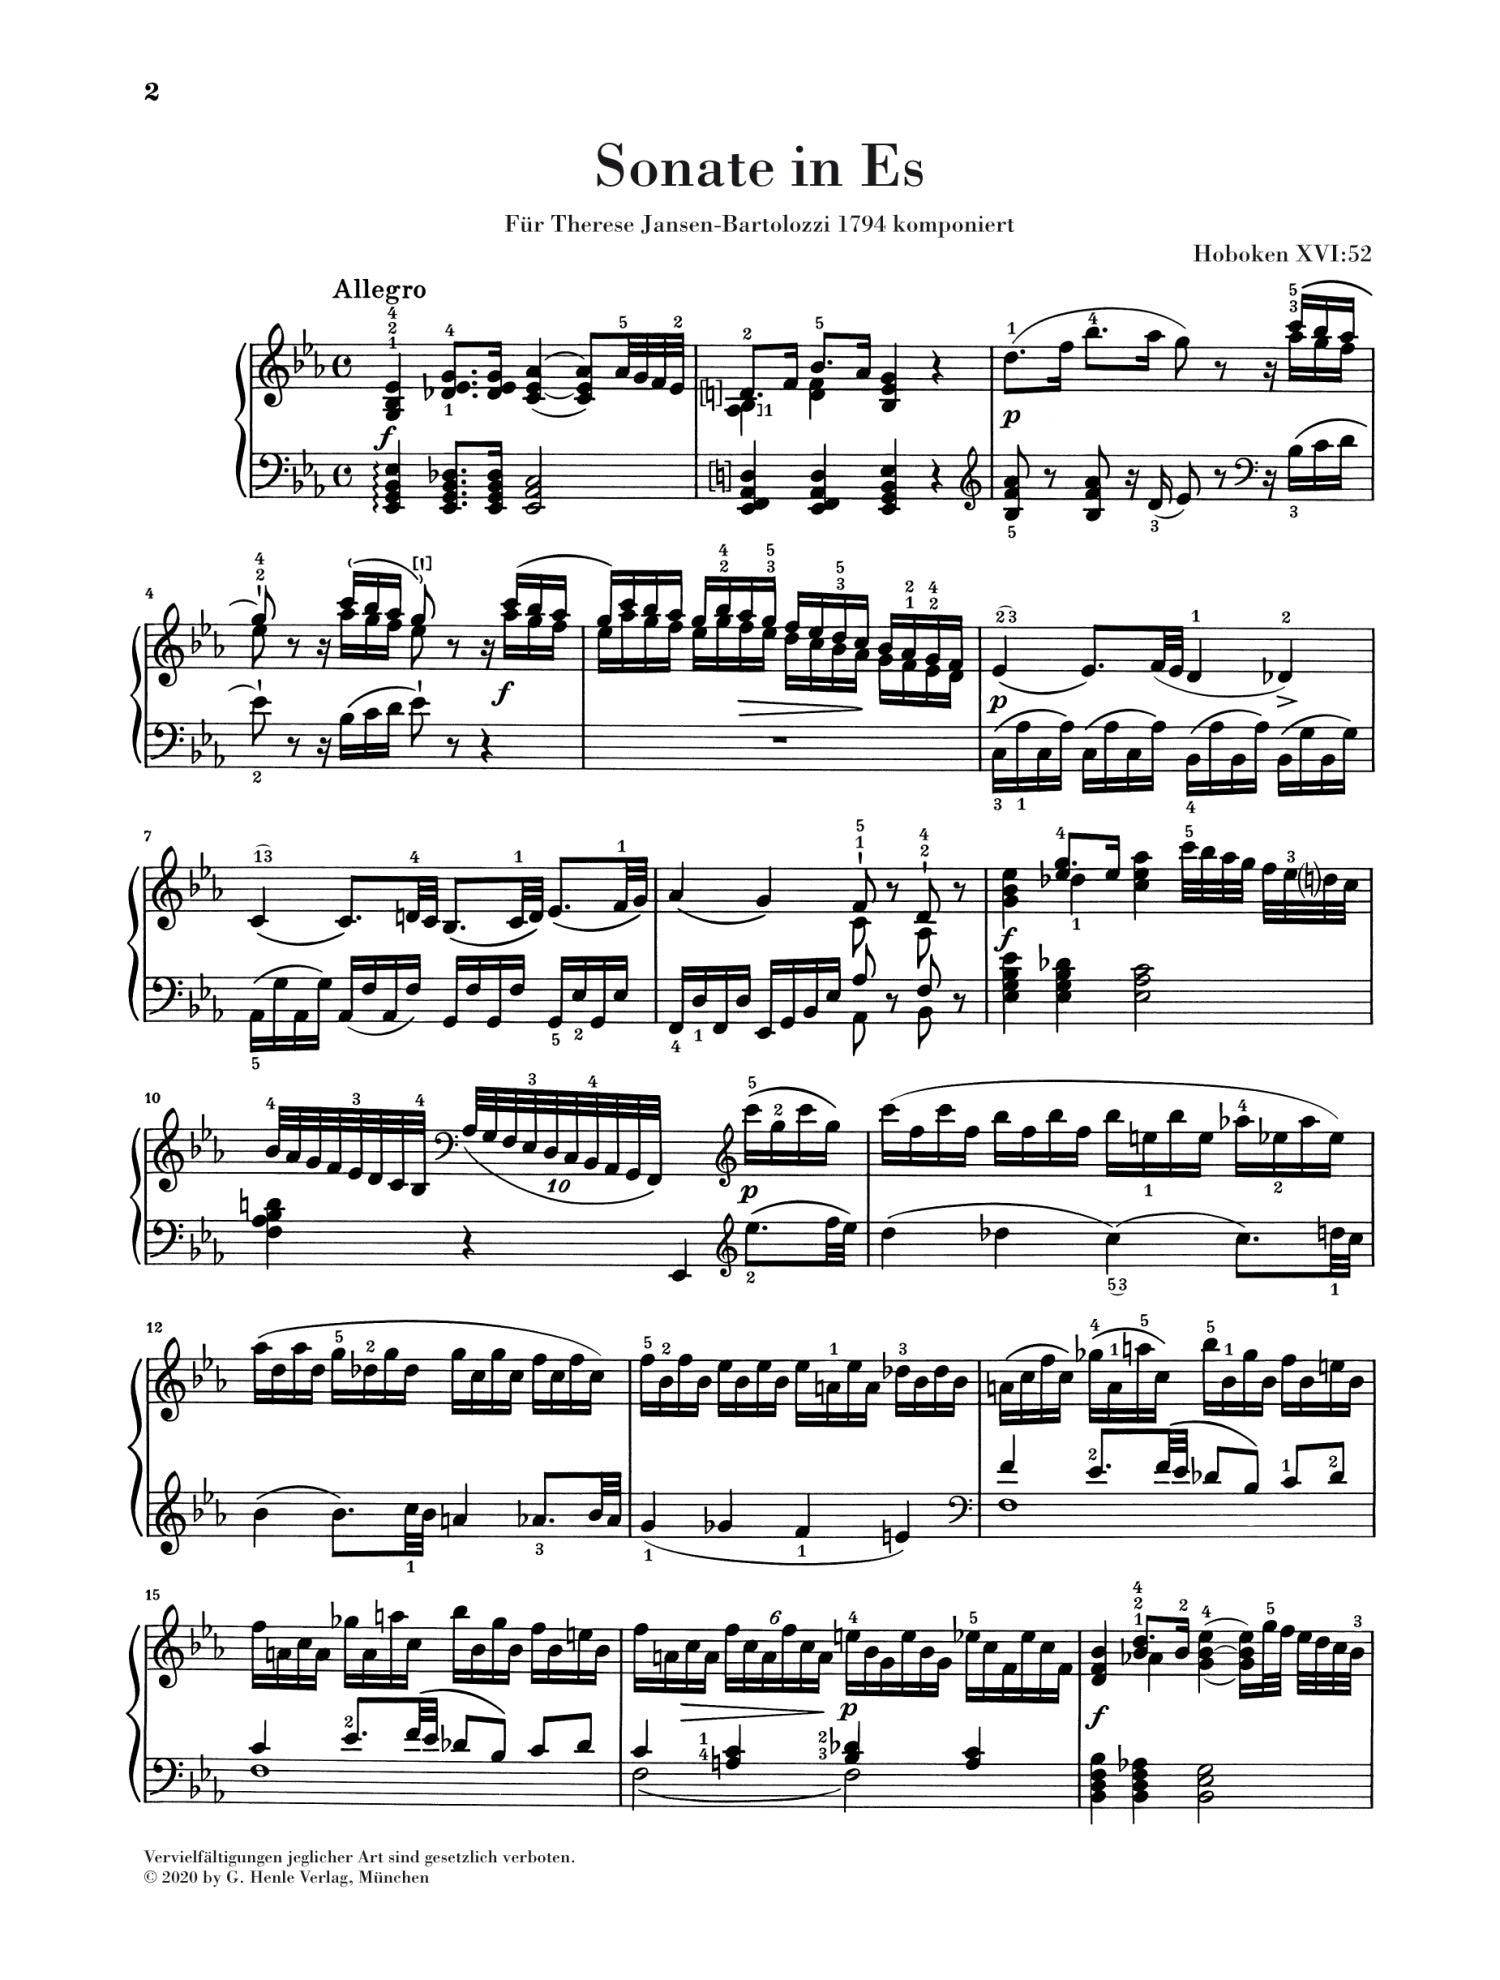 Haydn: Piano Sonata E flat major Hob. XVI:52